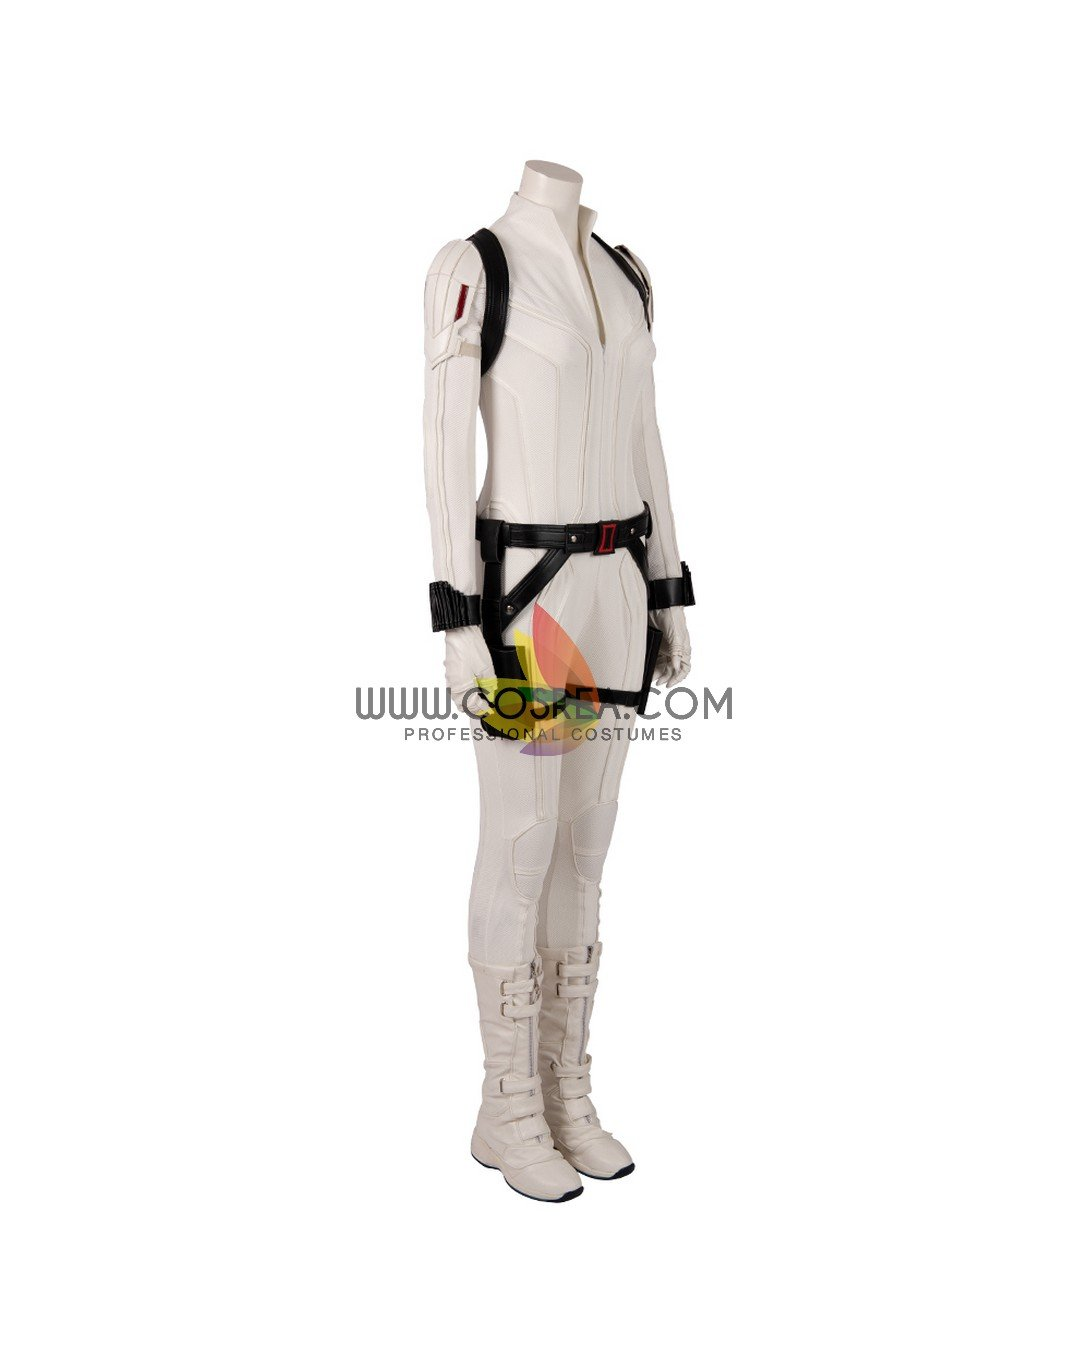 Black Widow Movie White Cosplay Costume